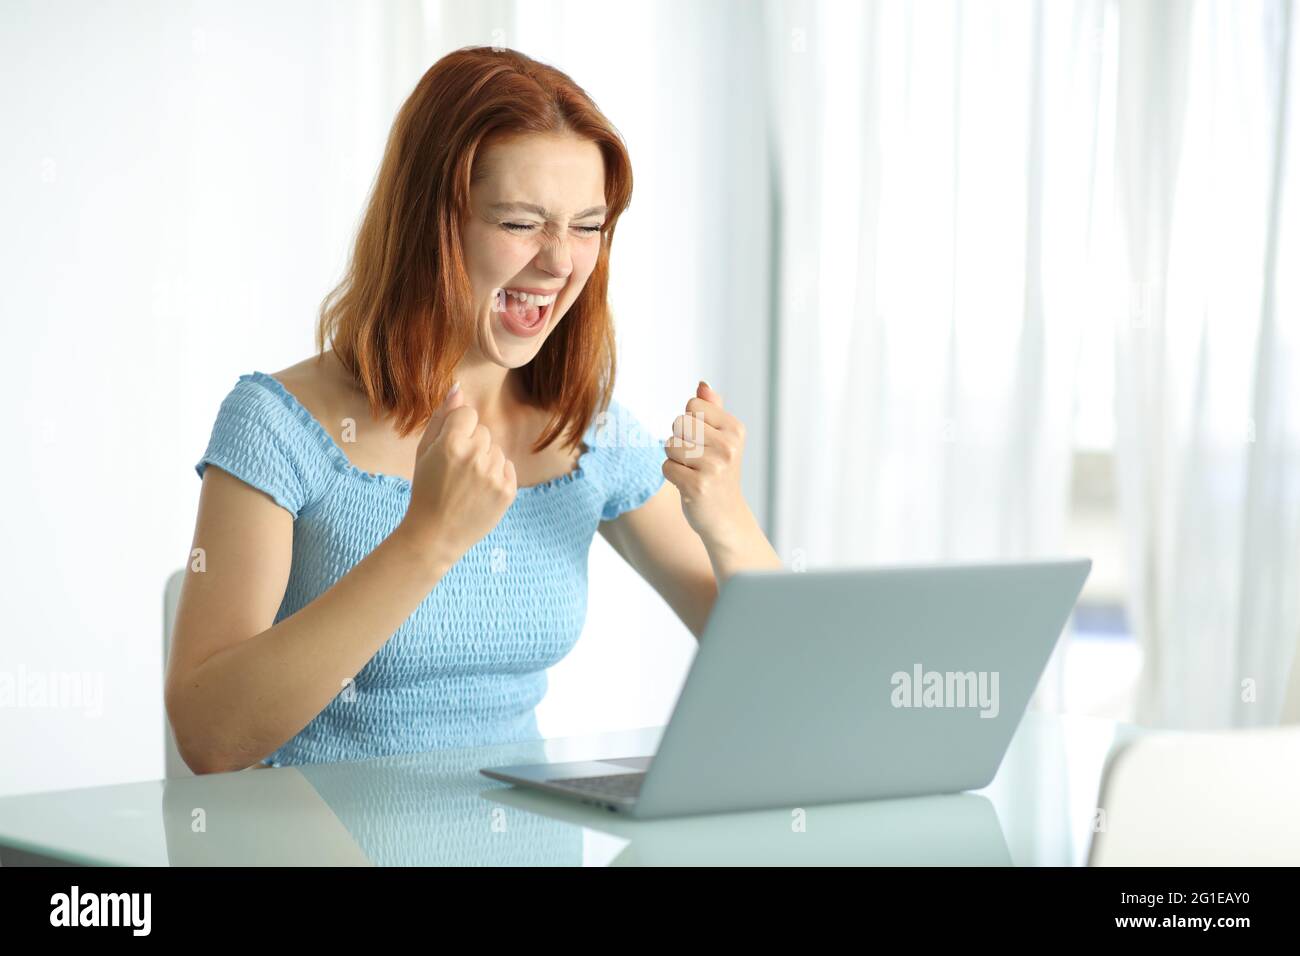 Eine aufgeregte Frau, die ihren Laptop verwendet, feiert den Erfolg in einem Hotelzimmer Stockfoto